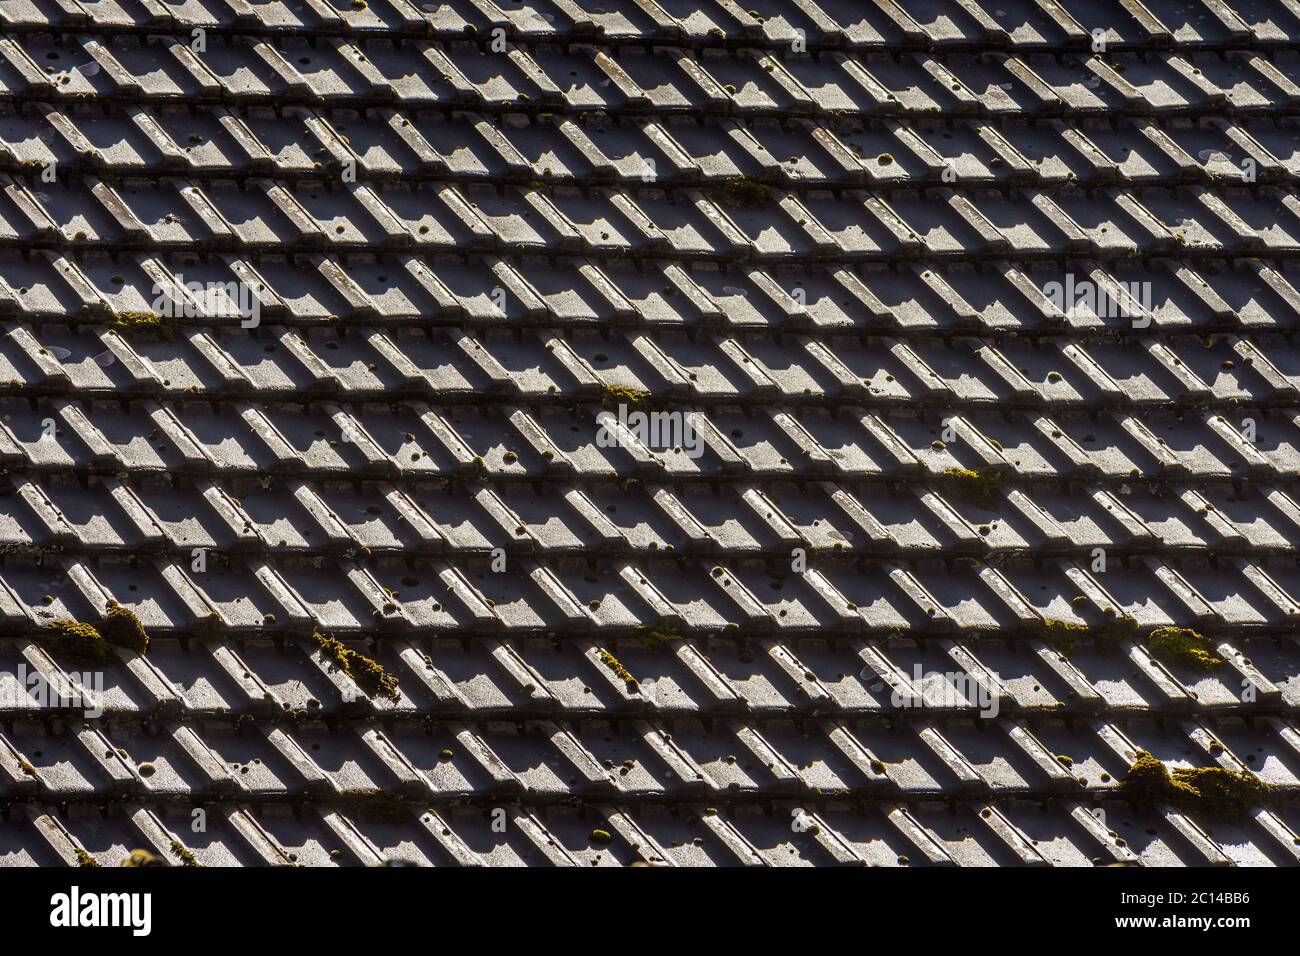 Dettaglio del tetto in tegole. Foto Stock